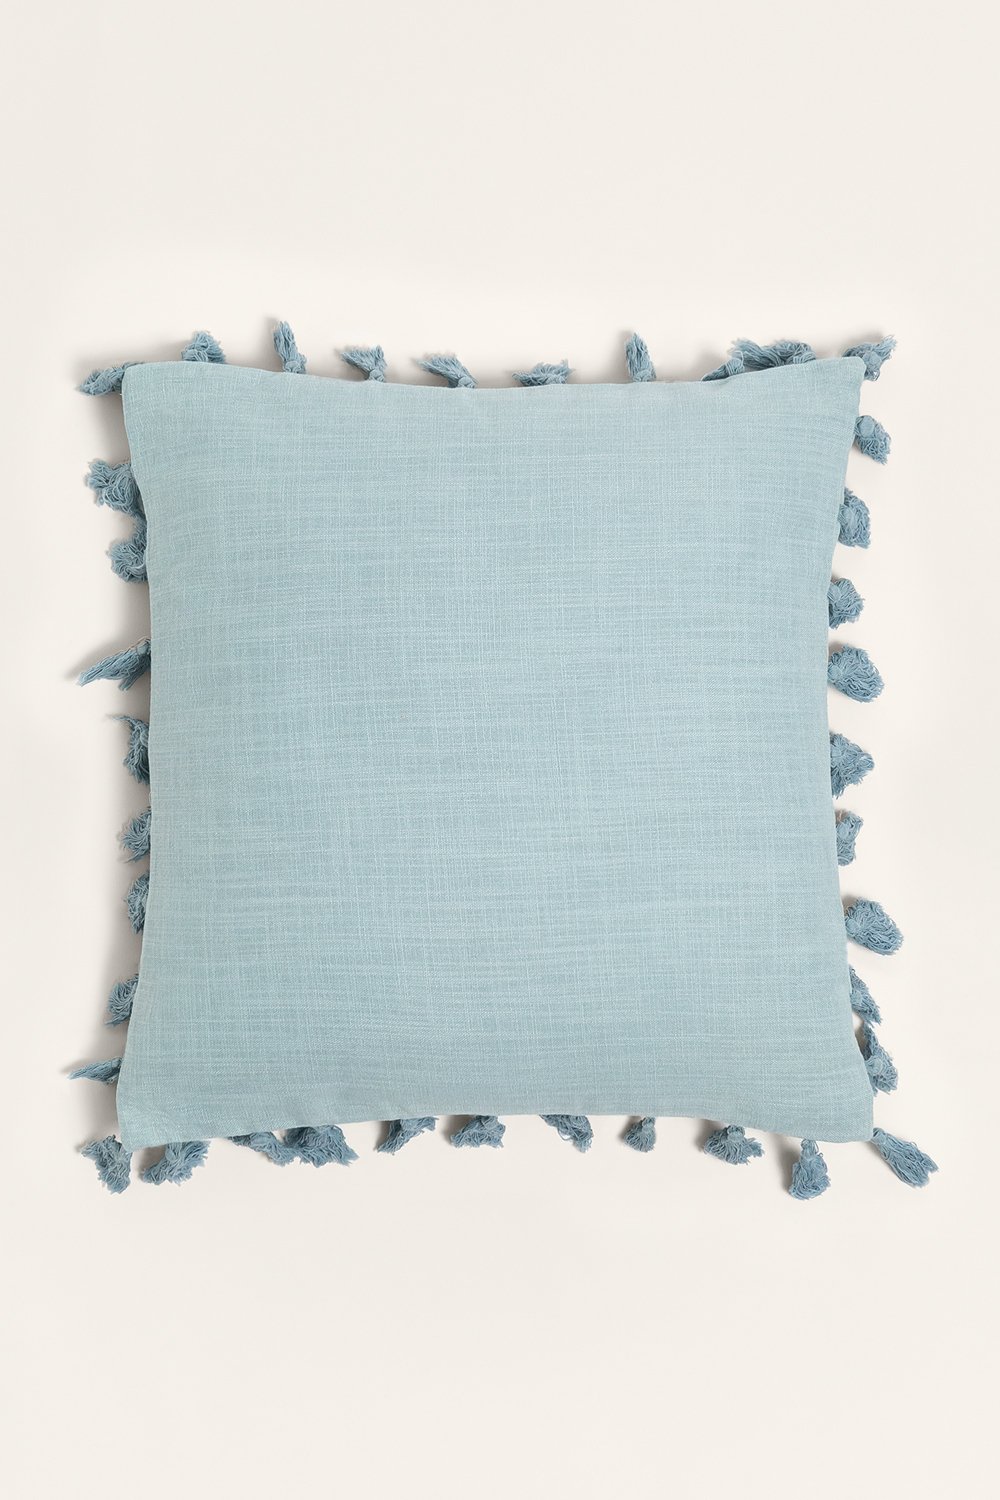 Cuscino quadrato in cotone (45x45 cm) Laurent, immagine della galleria 1